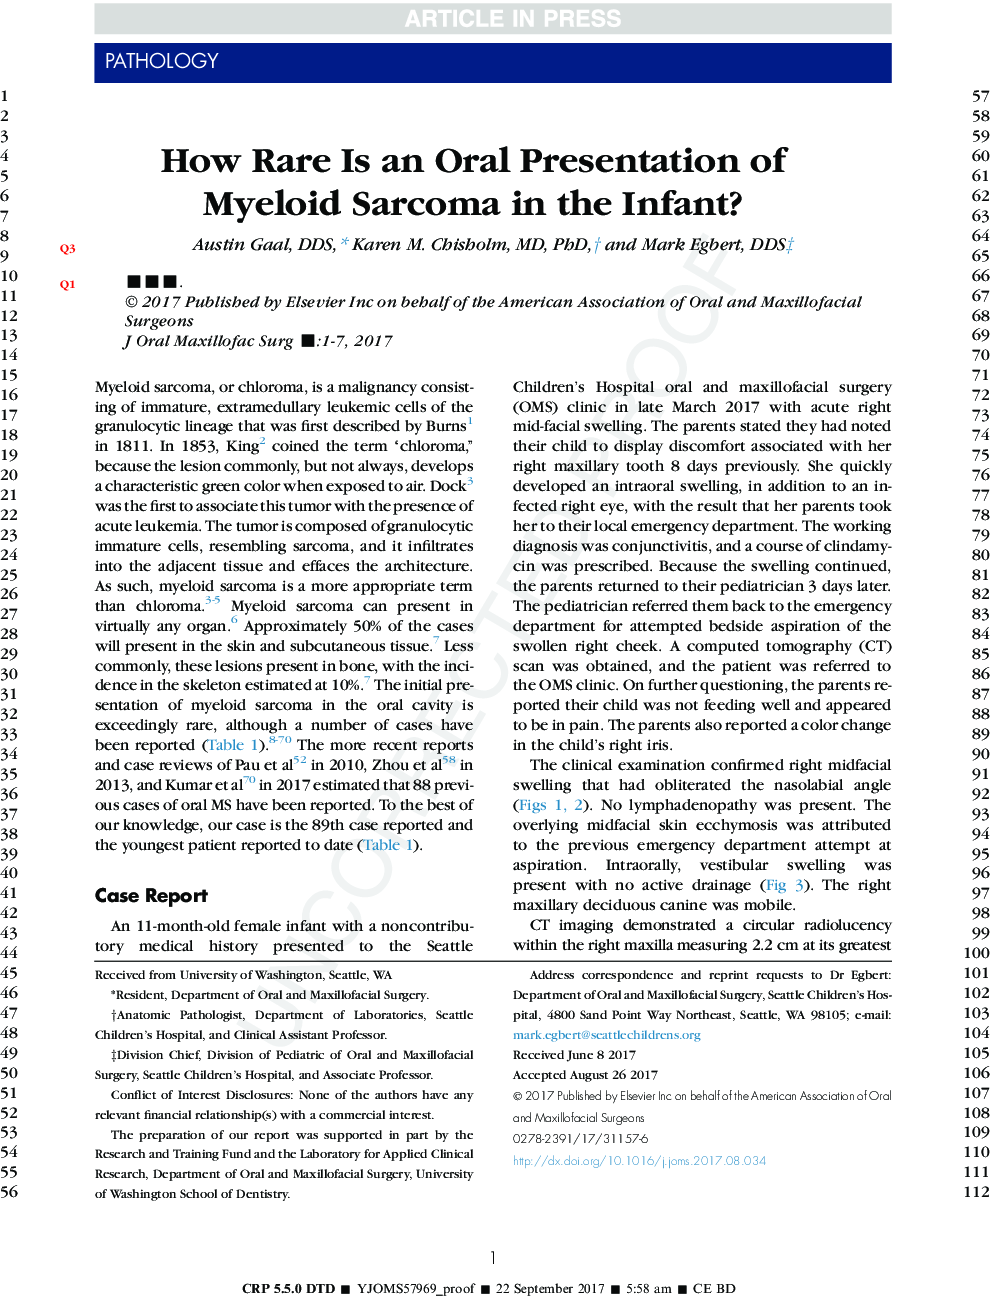 چگونه نادر بودن یک خوراکی سارکوم میلوئید در نوزاد است؟ 